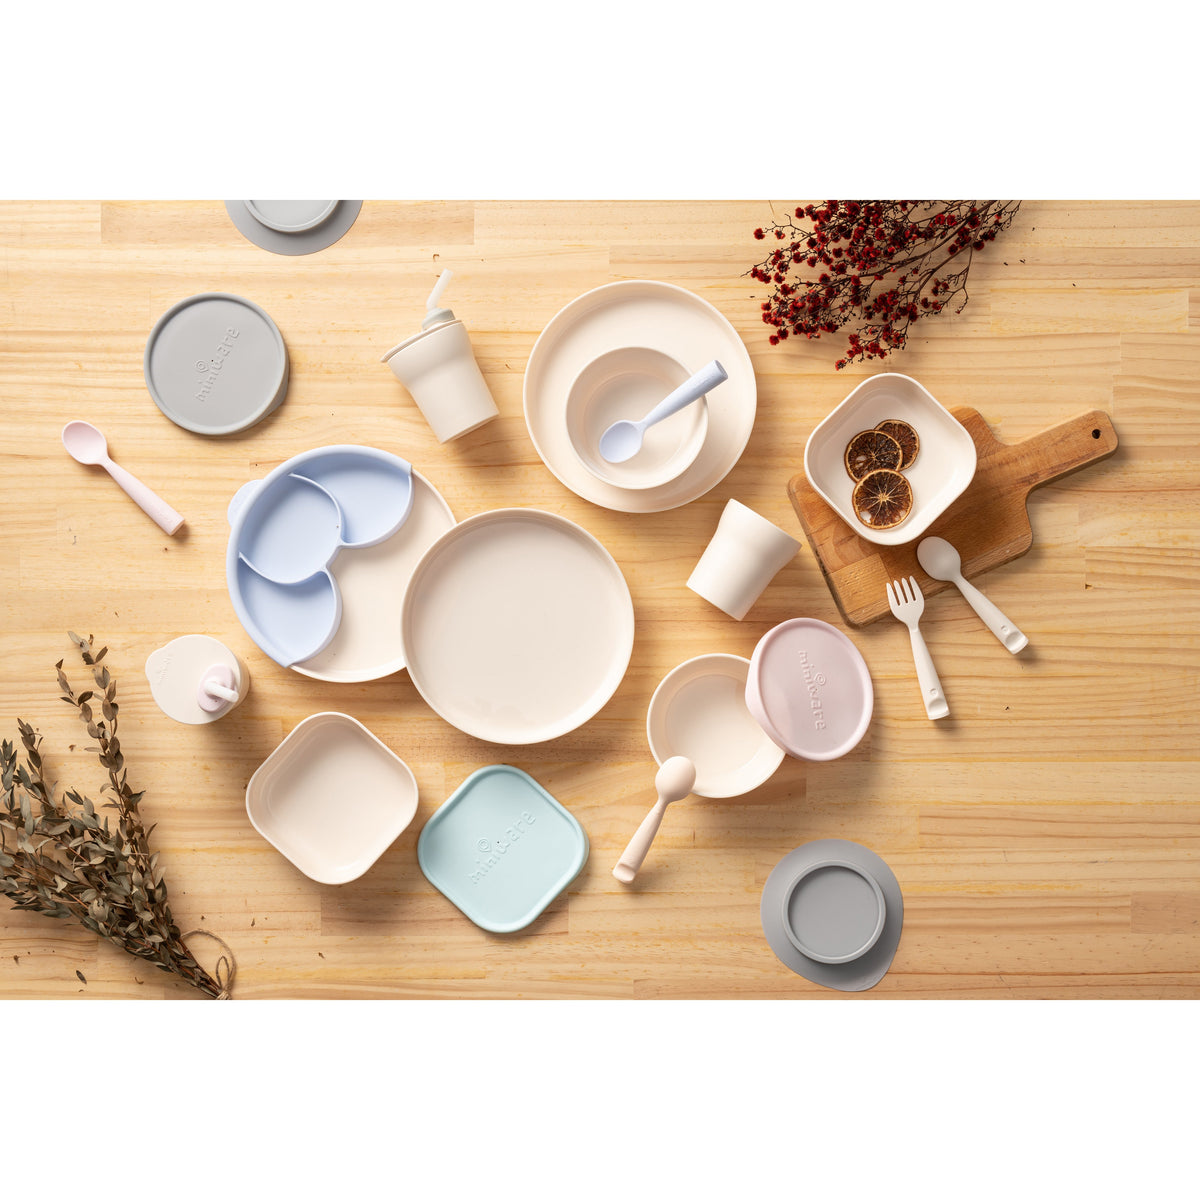 miniware-snack-bowl-set-pla-suction-bowl-vanilla-silicone-cover-in-aqua- (18)